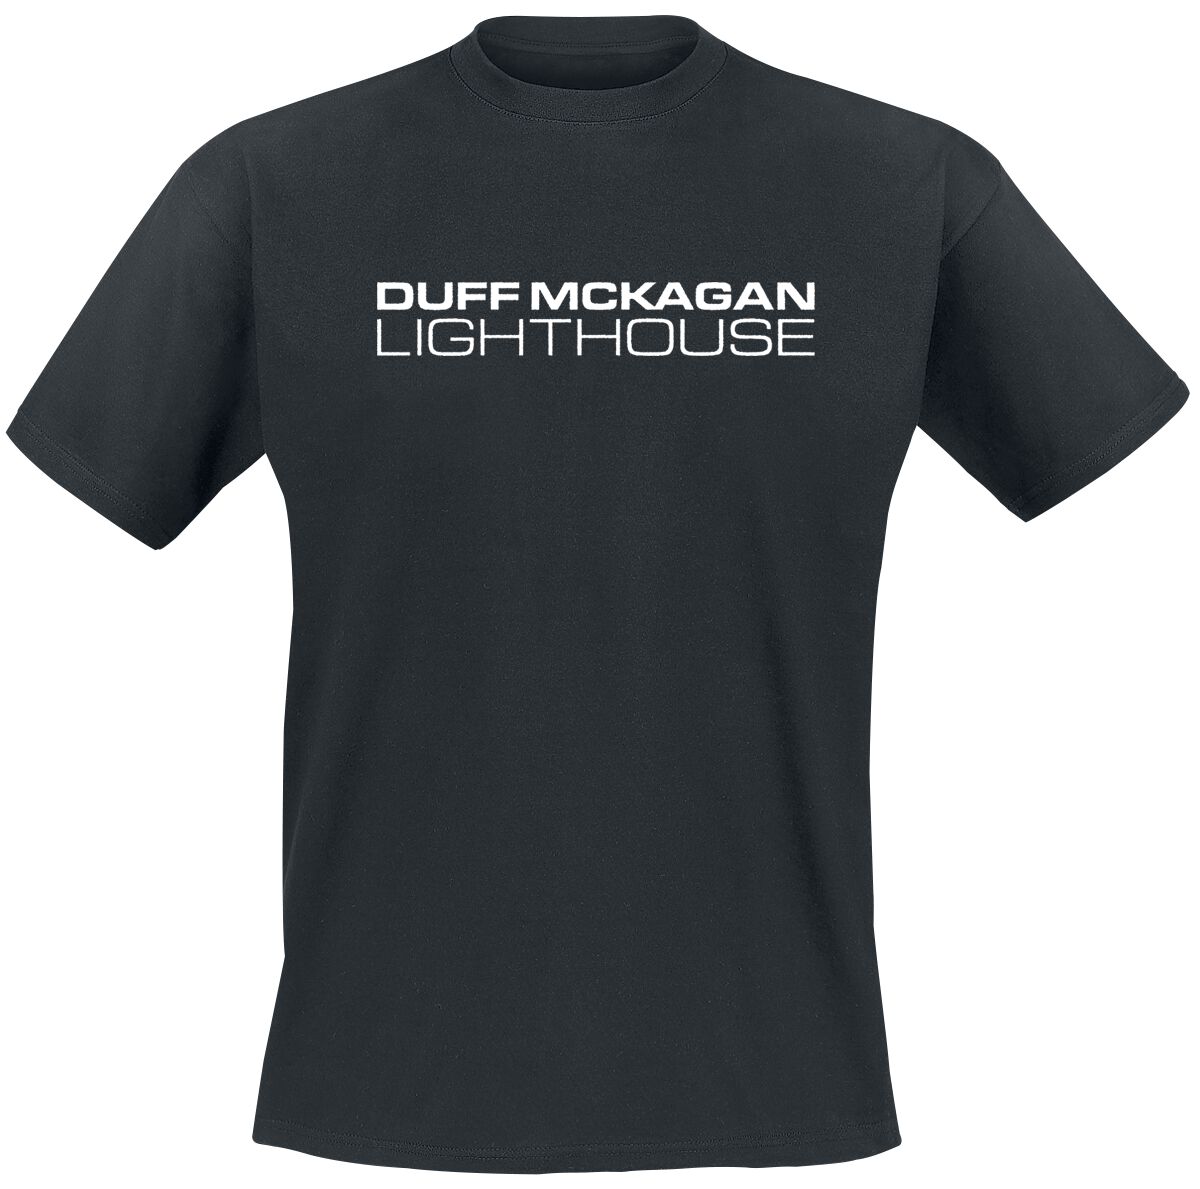 McKagan, Duff T-Shirt - Lighthouse - S bis XXL - für Männer - Größe L - schwarz  - Lizenziertes Merchandise!